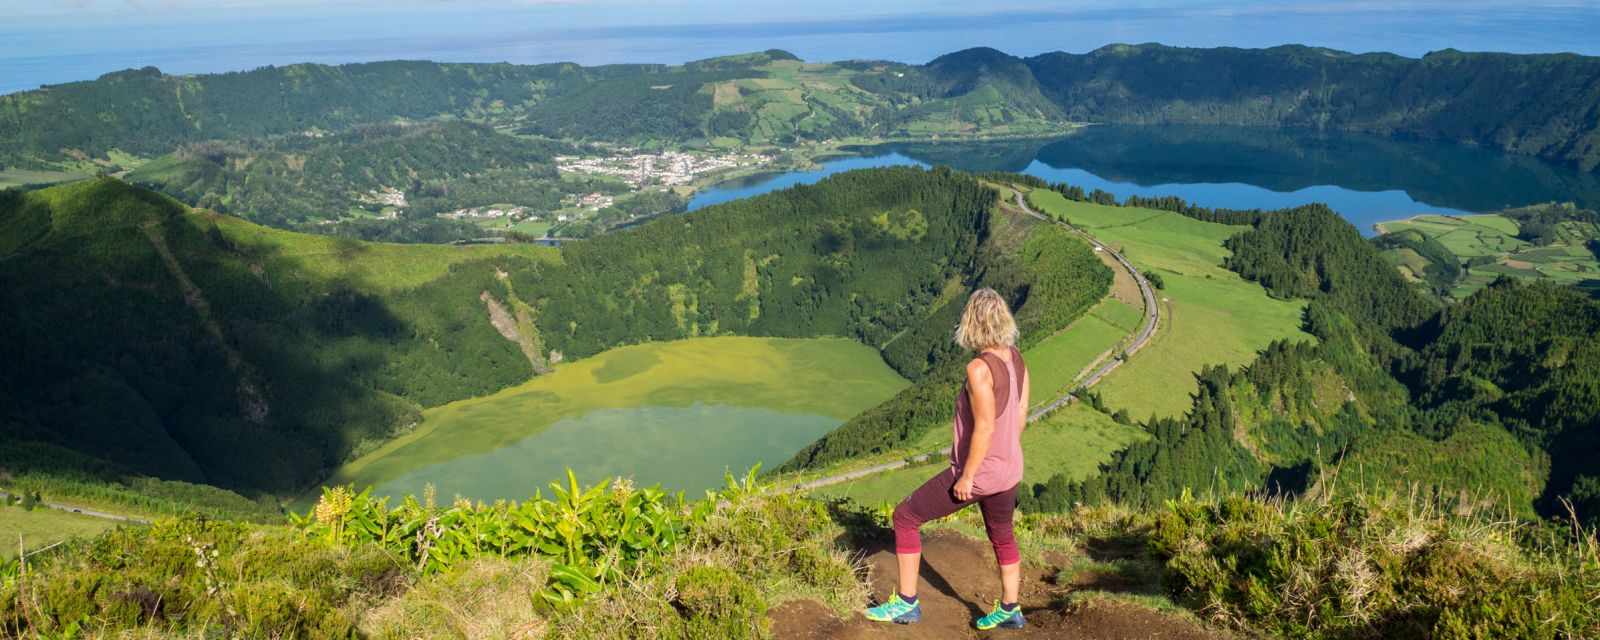 Miradouro da Boca do Inferno in São Miguel - Sete Cidades Azores